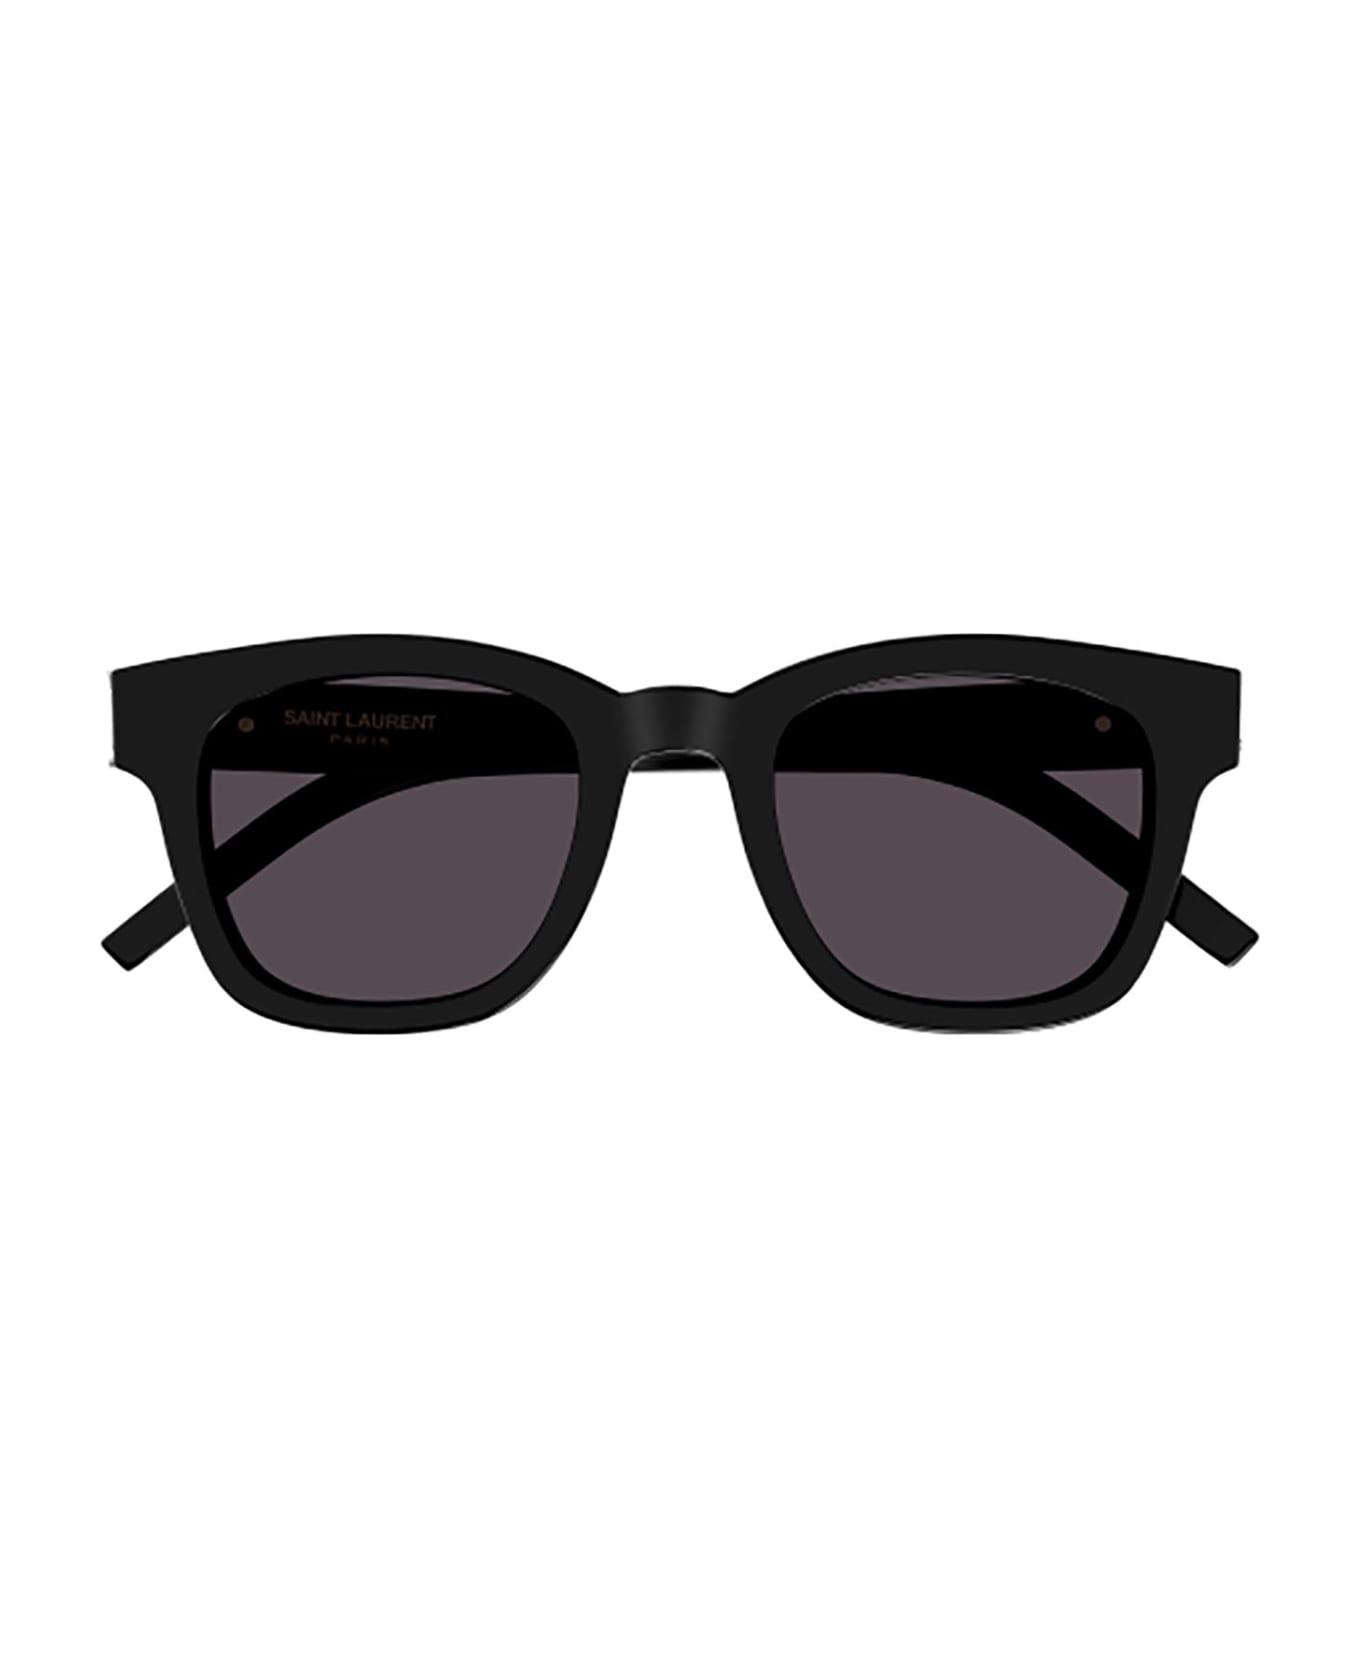 Saint Laurent Eyewear Sl M124 Sunglasses - 001 black black black